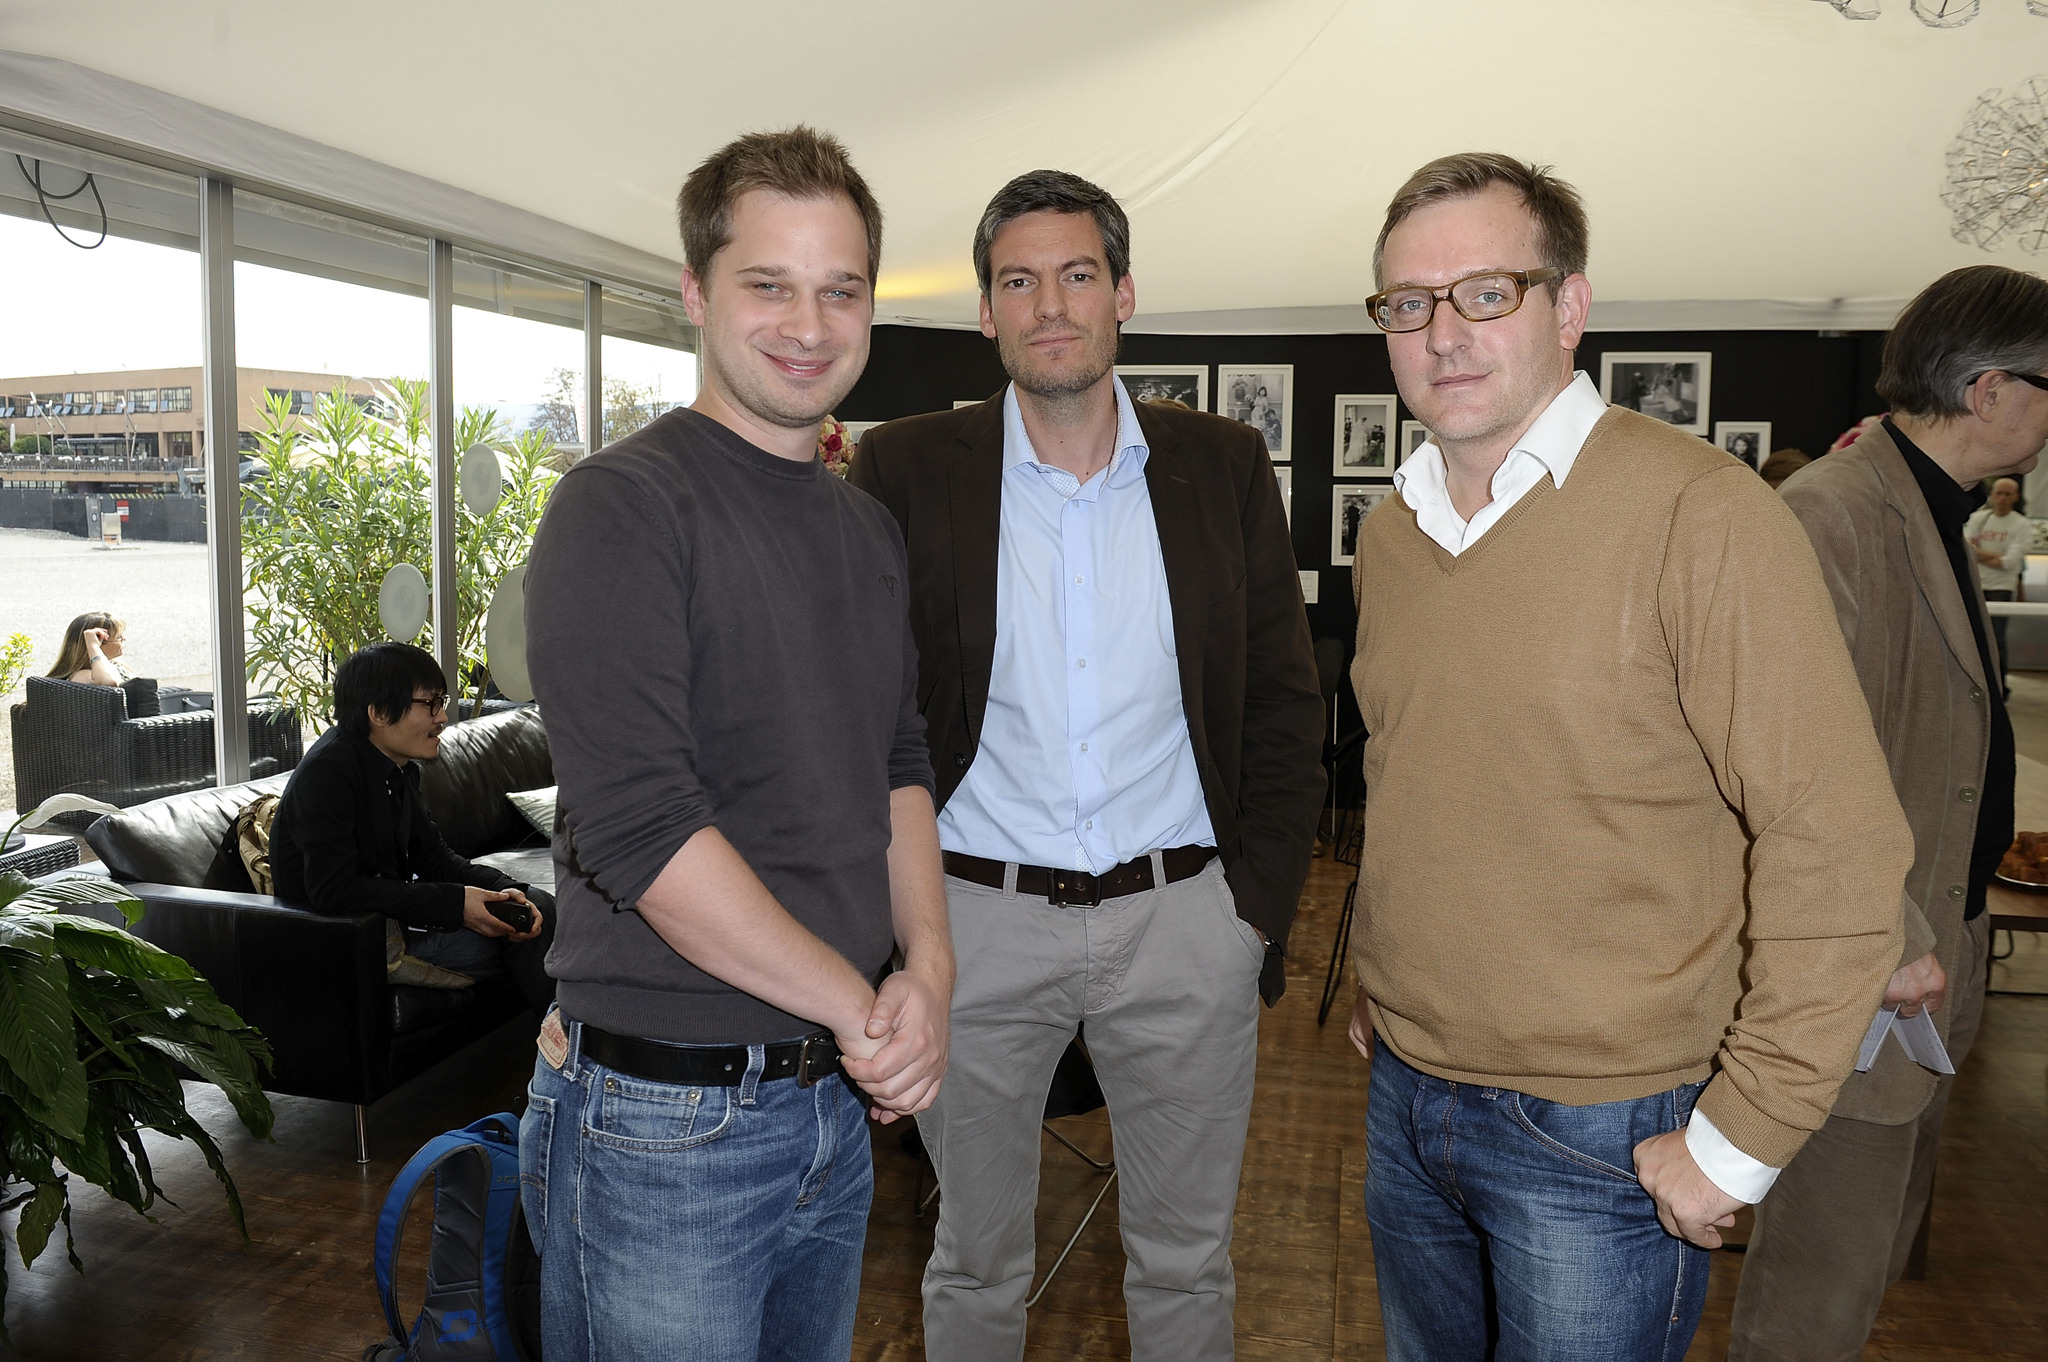 Matthias Drescher, Philipp Knauss and Lars-Gunnar Lotz